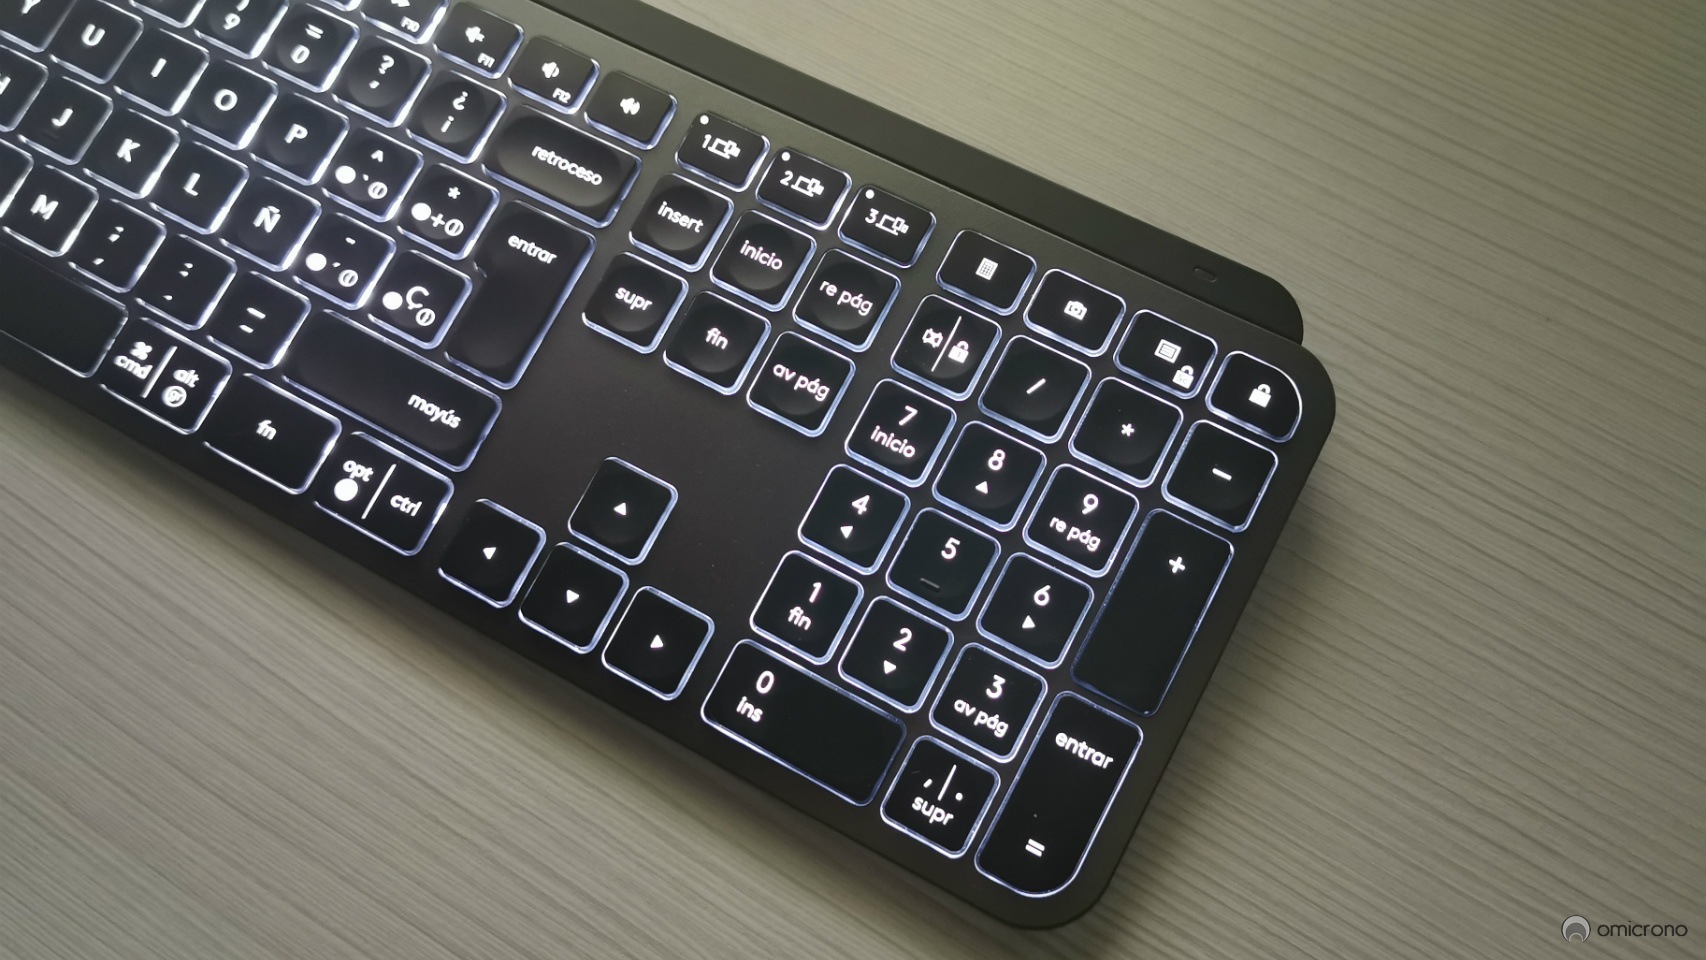 Logitech MX análisis: el teclado que ilumina al acercar las manos